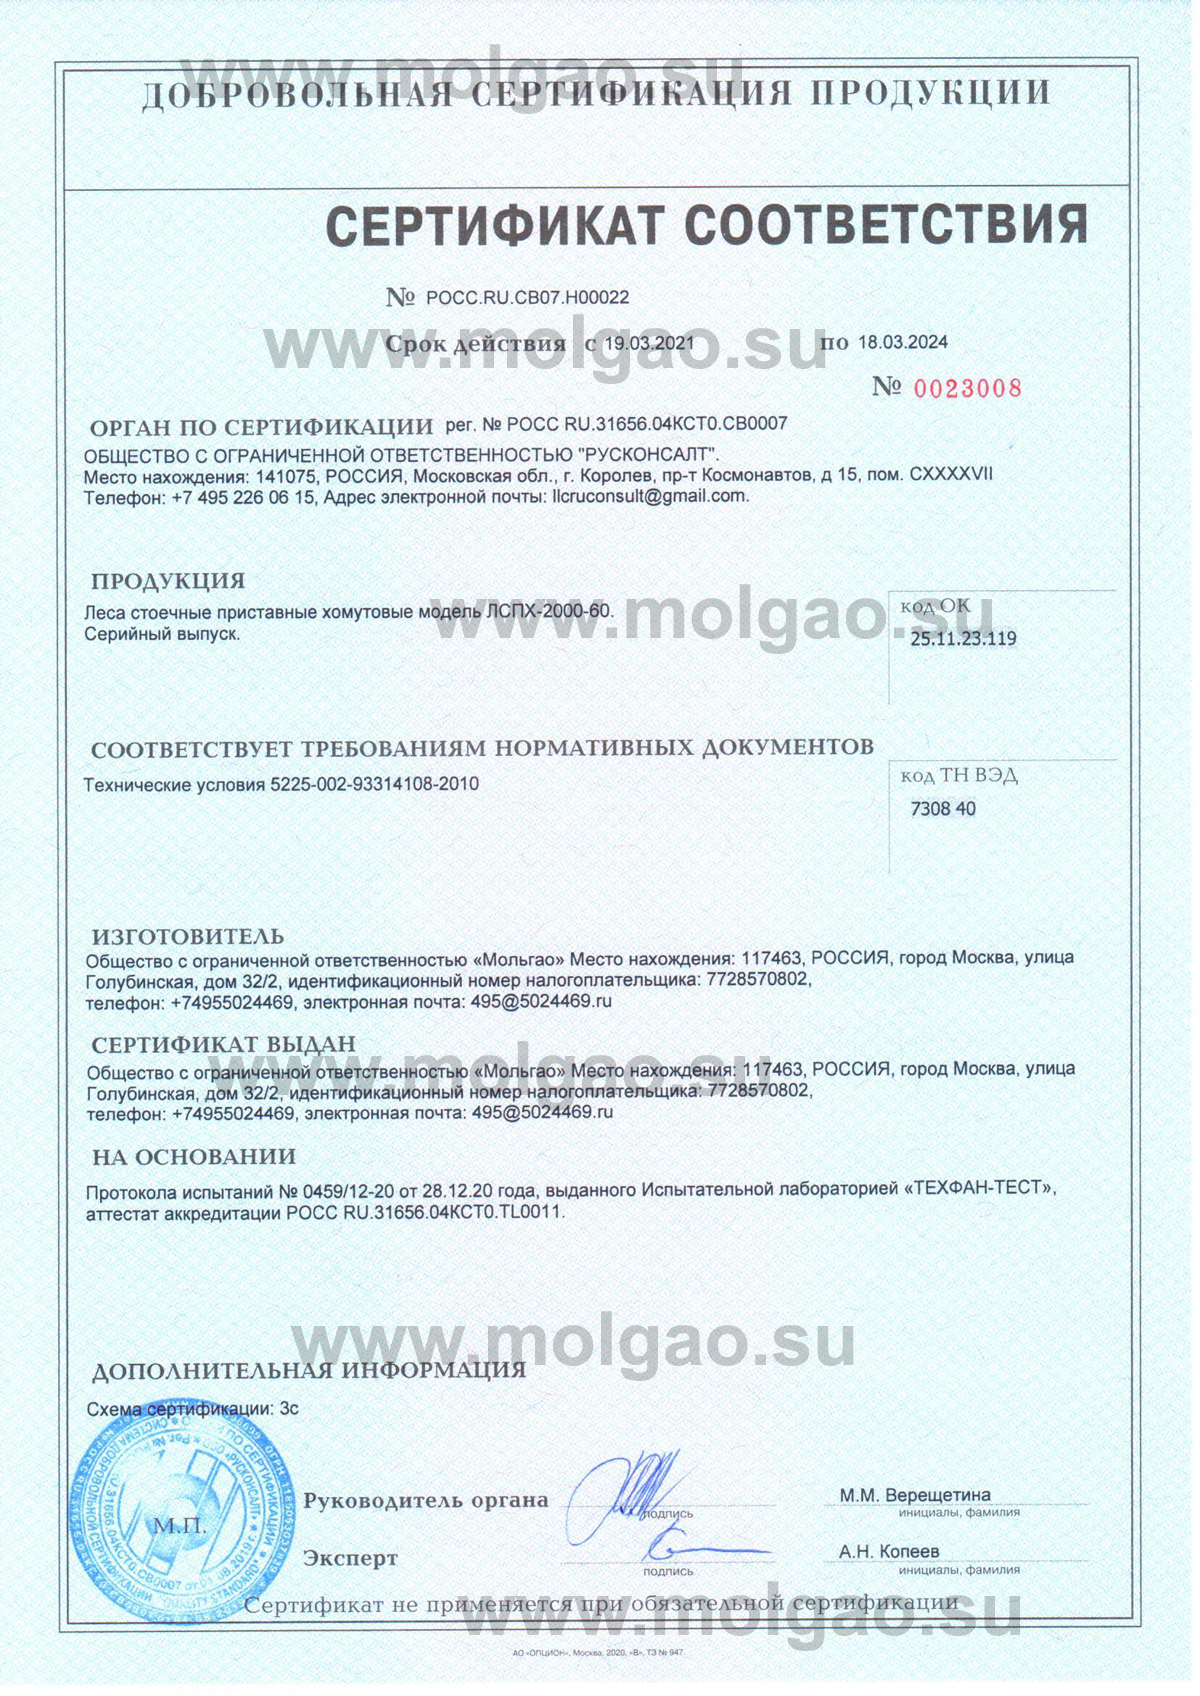 Сертификат на хомутовые строительные леса Мольгао ЛСПХ-2000-60